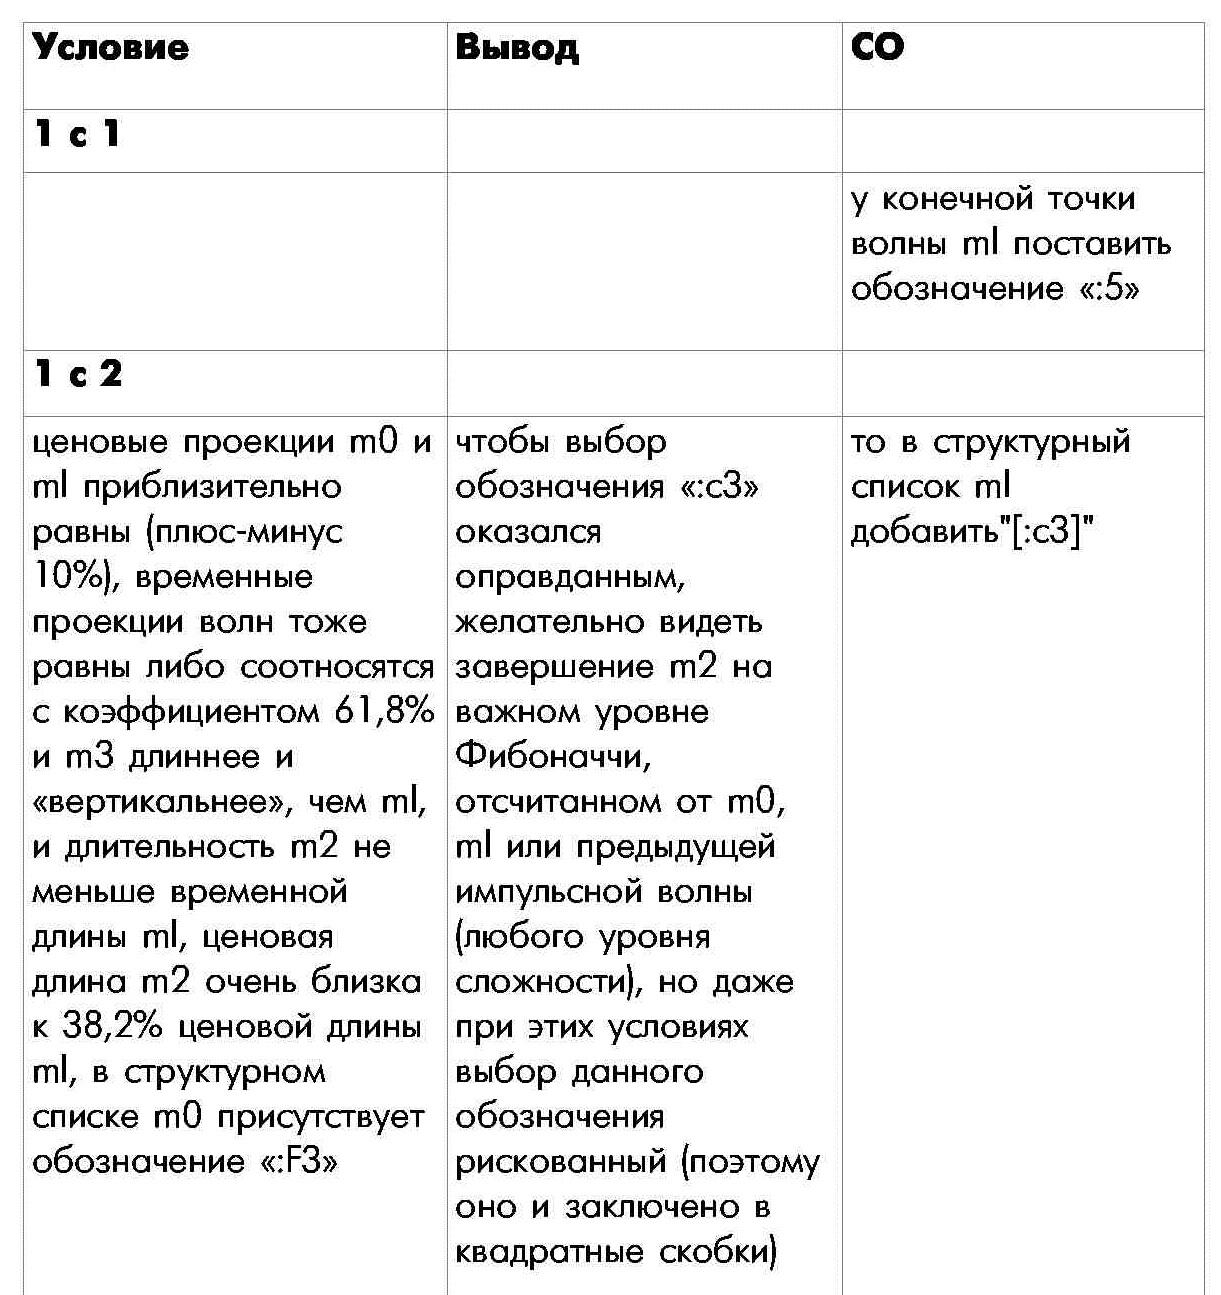 Правило 1 определения внутренней структуры моноволны шестая часть таблицы